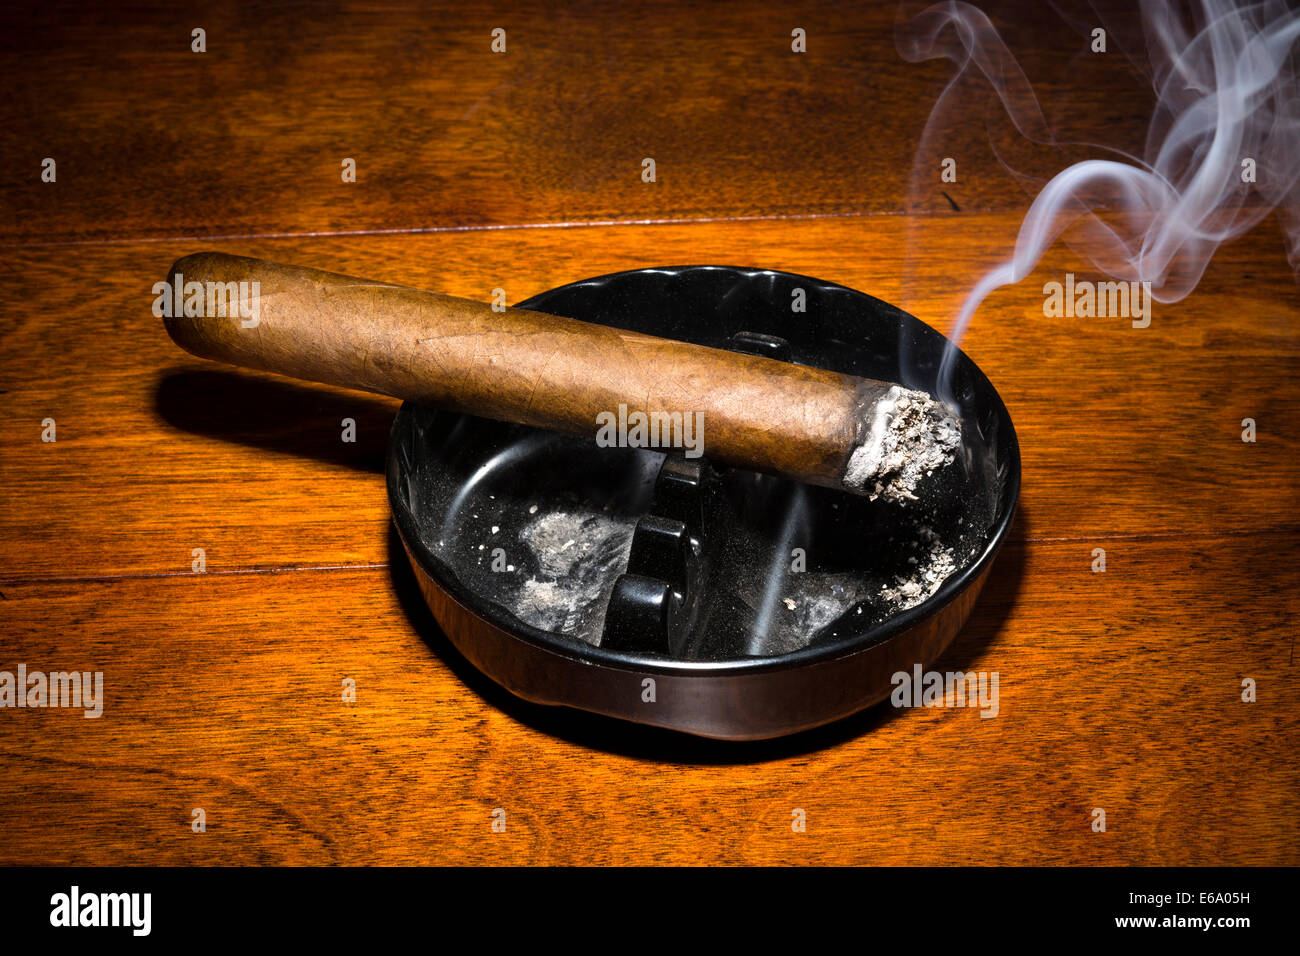 Un sigaro di masterizzazione in un classico posacenere nero fumo di streaming in un buio, moody impostazione. Foto Stock